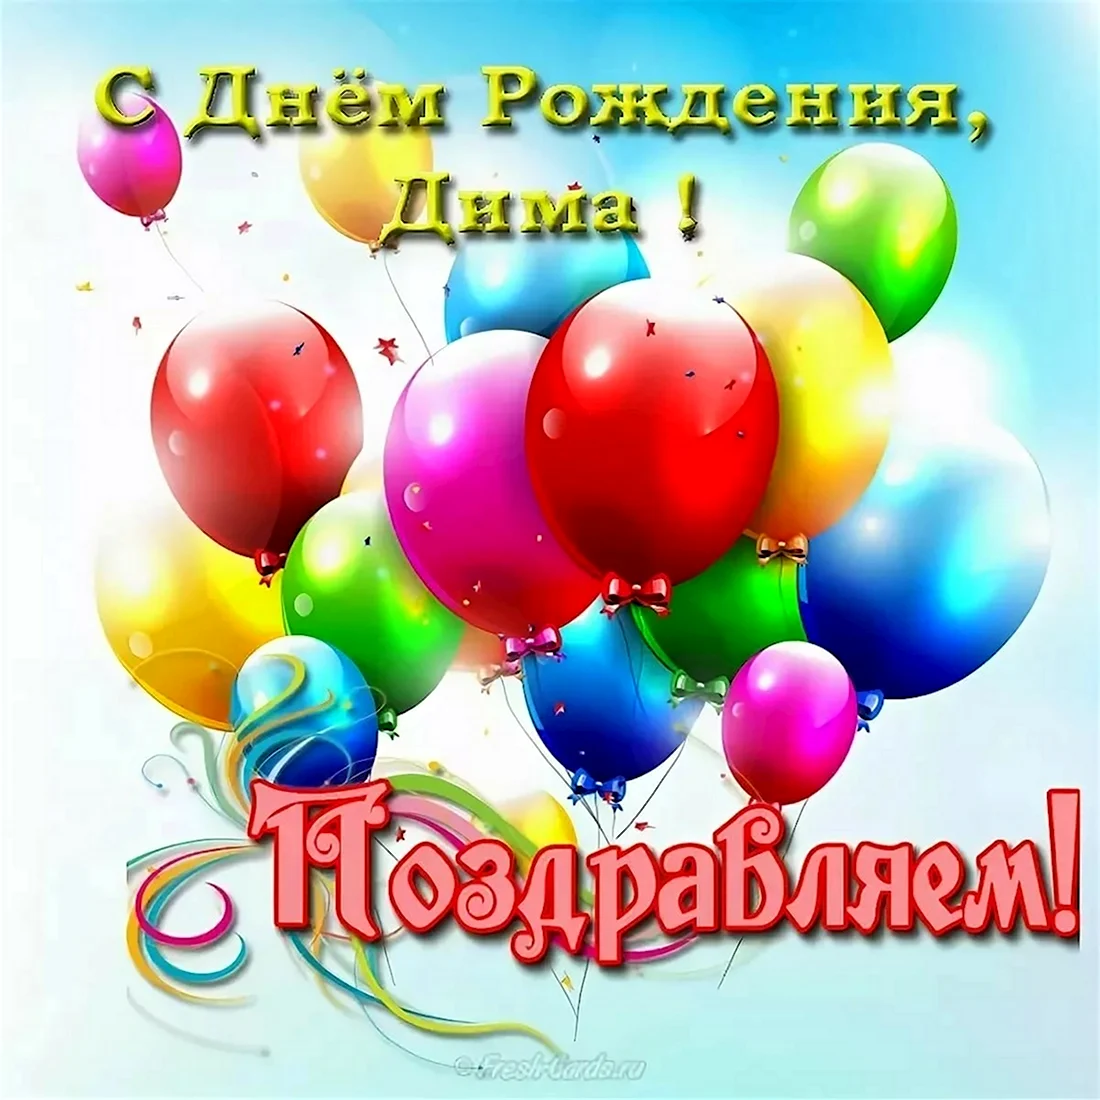 Поздравление с Днем Рождения племяннику Дмитрию голосом Путина